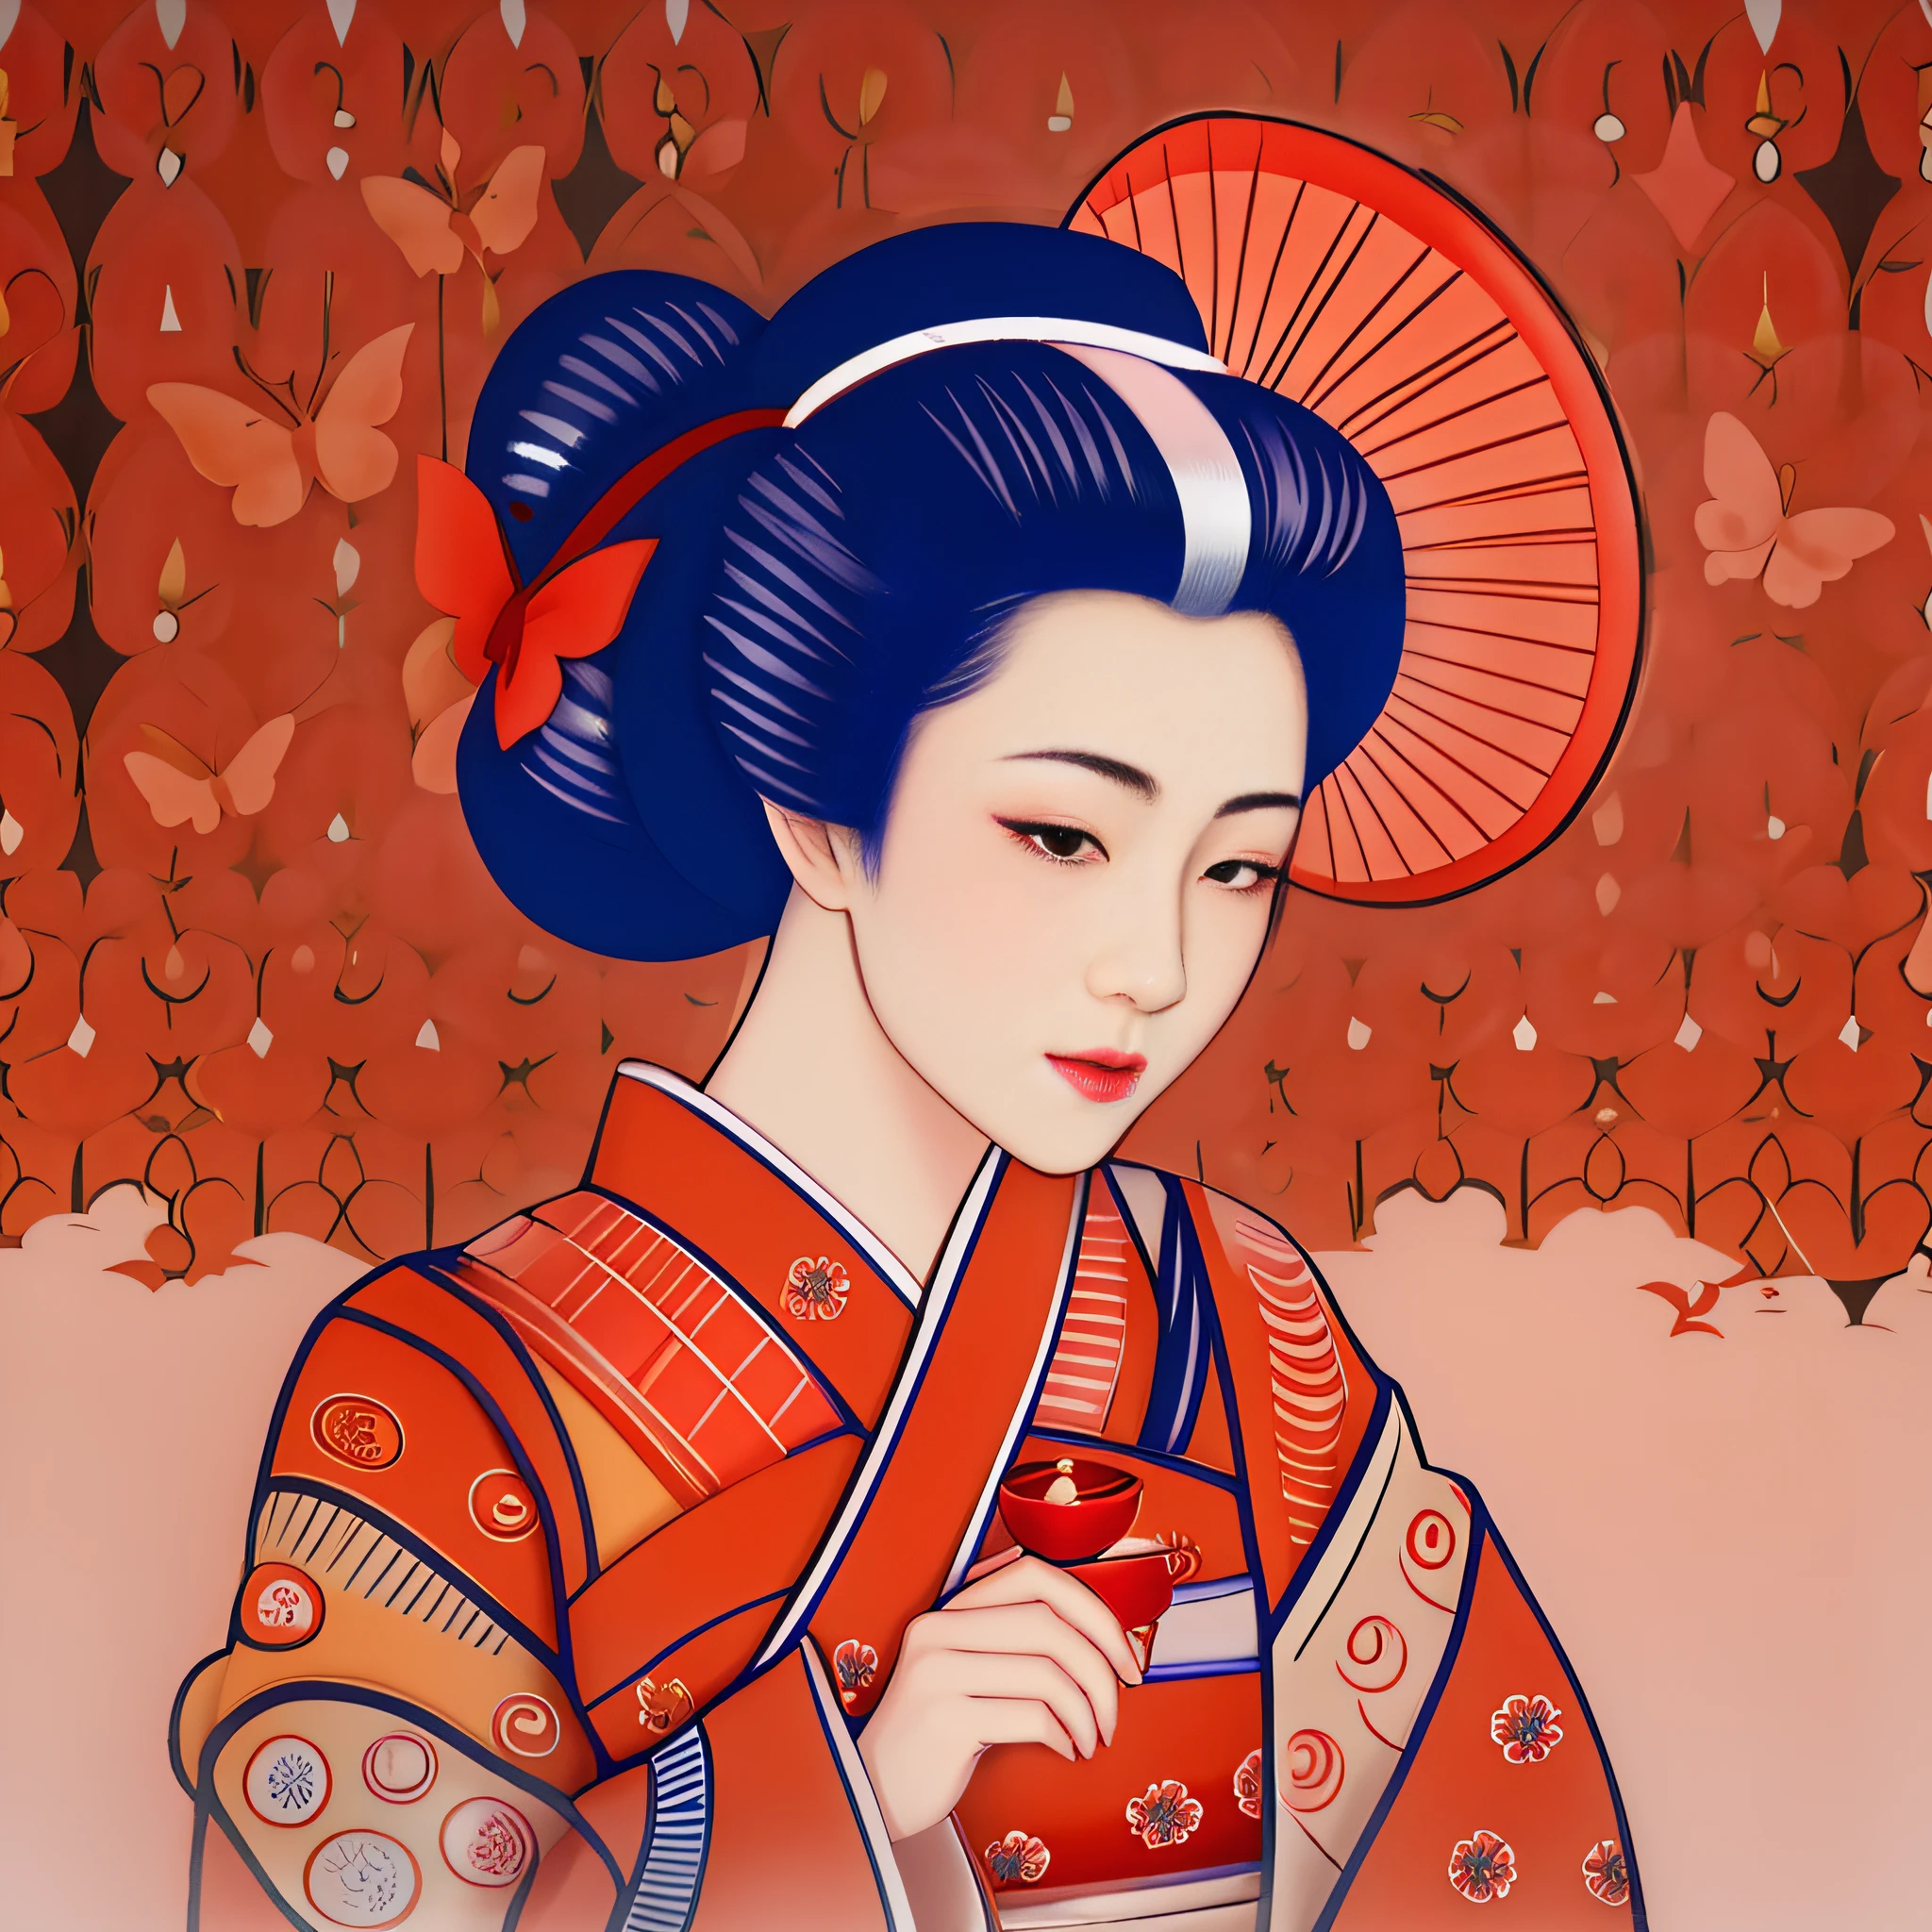 da ist eine Frau im Kimono mit einem roten Regenschirm, japanischer Kunststil, Geisha japonesa, Retrato de uma Geisha bonita, Schönheits-Geisha, Retrato da Geisha, inspiriert von Uemura Shōen, weibliches Geisha-Mädchen, Nicht-Ukiyo-Kunststil - E, Retrato de uma Geisha, Japanische Kunst, elegante japanische Frau, Geisha.